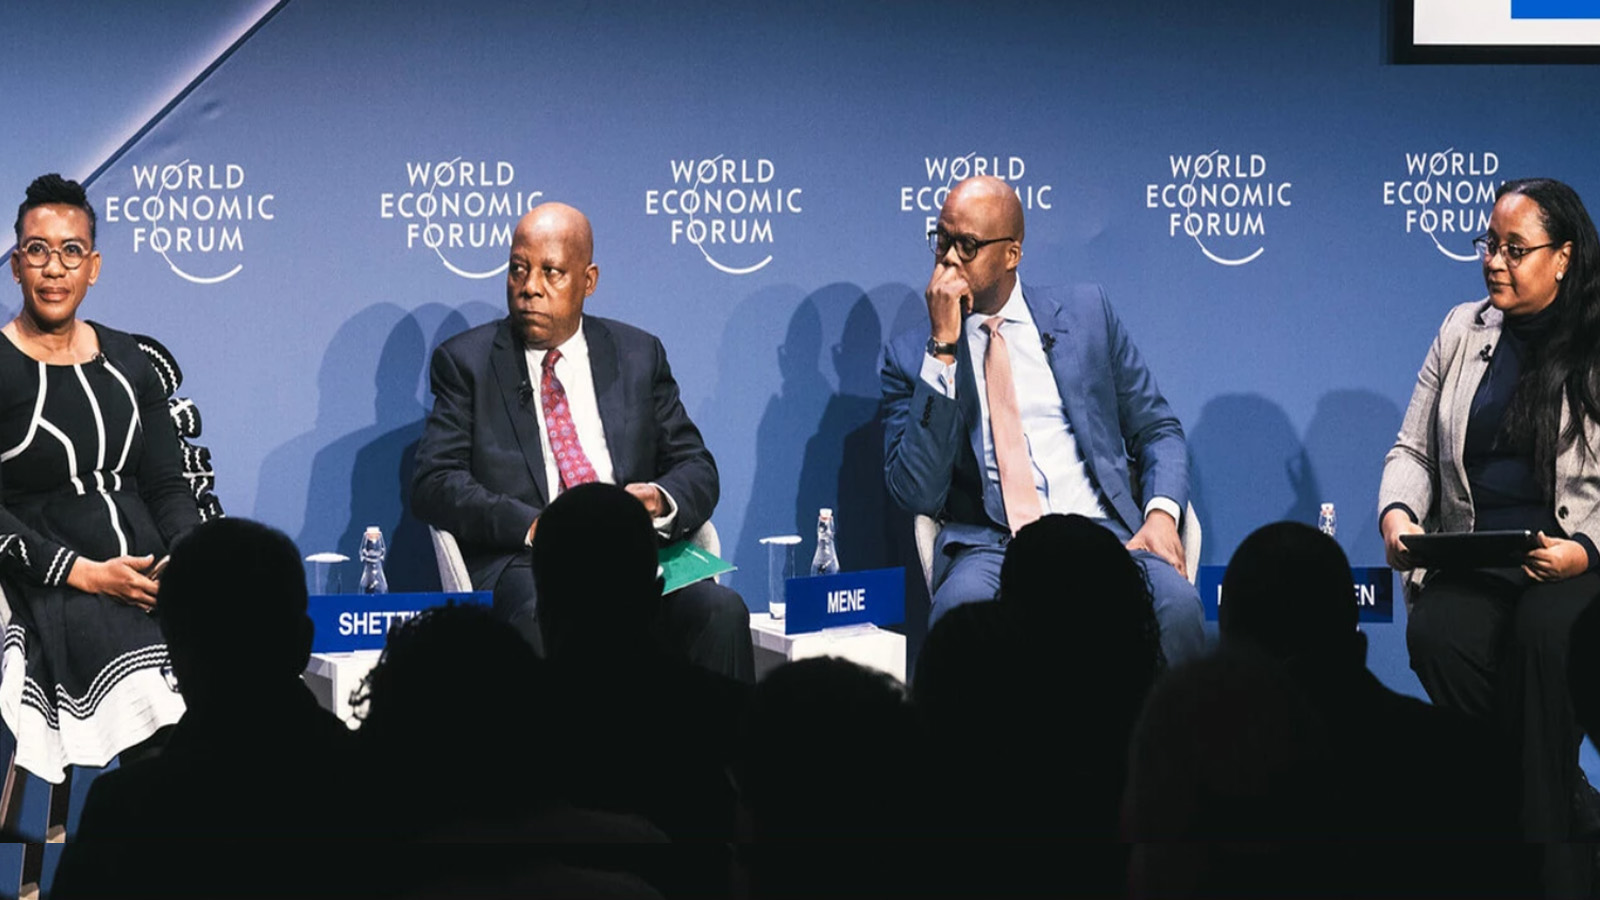  فيفي أندروز تدير الجلسة طارحة سؤالاً على الأفارقة في دافوس حول توسيع نطاق الاقتصاد الأفريقي: هل أفريقيا تنهض حقاً، أم أن 